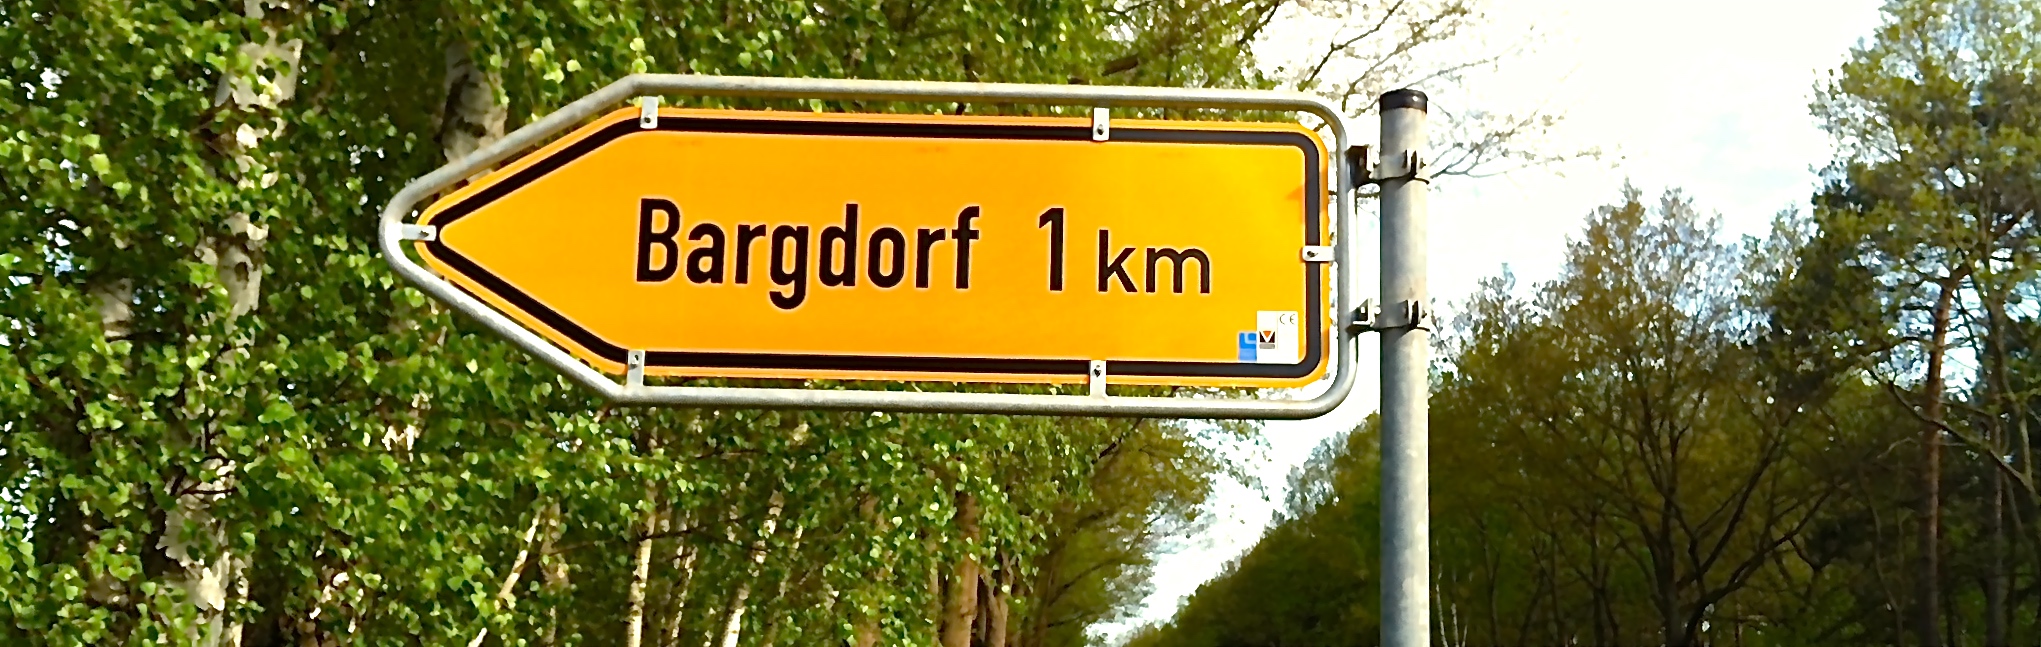 Bargdorf 3